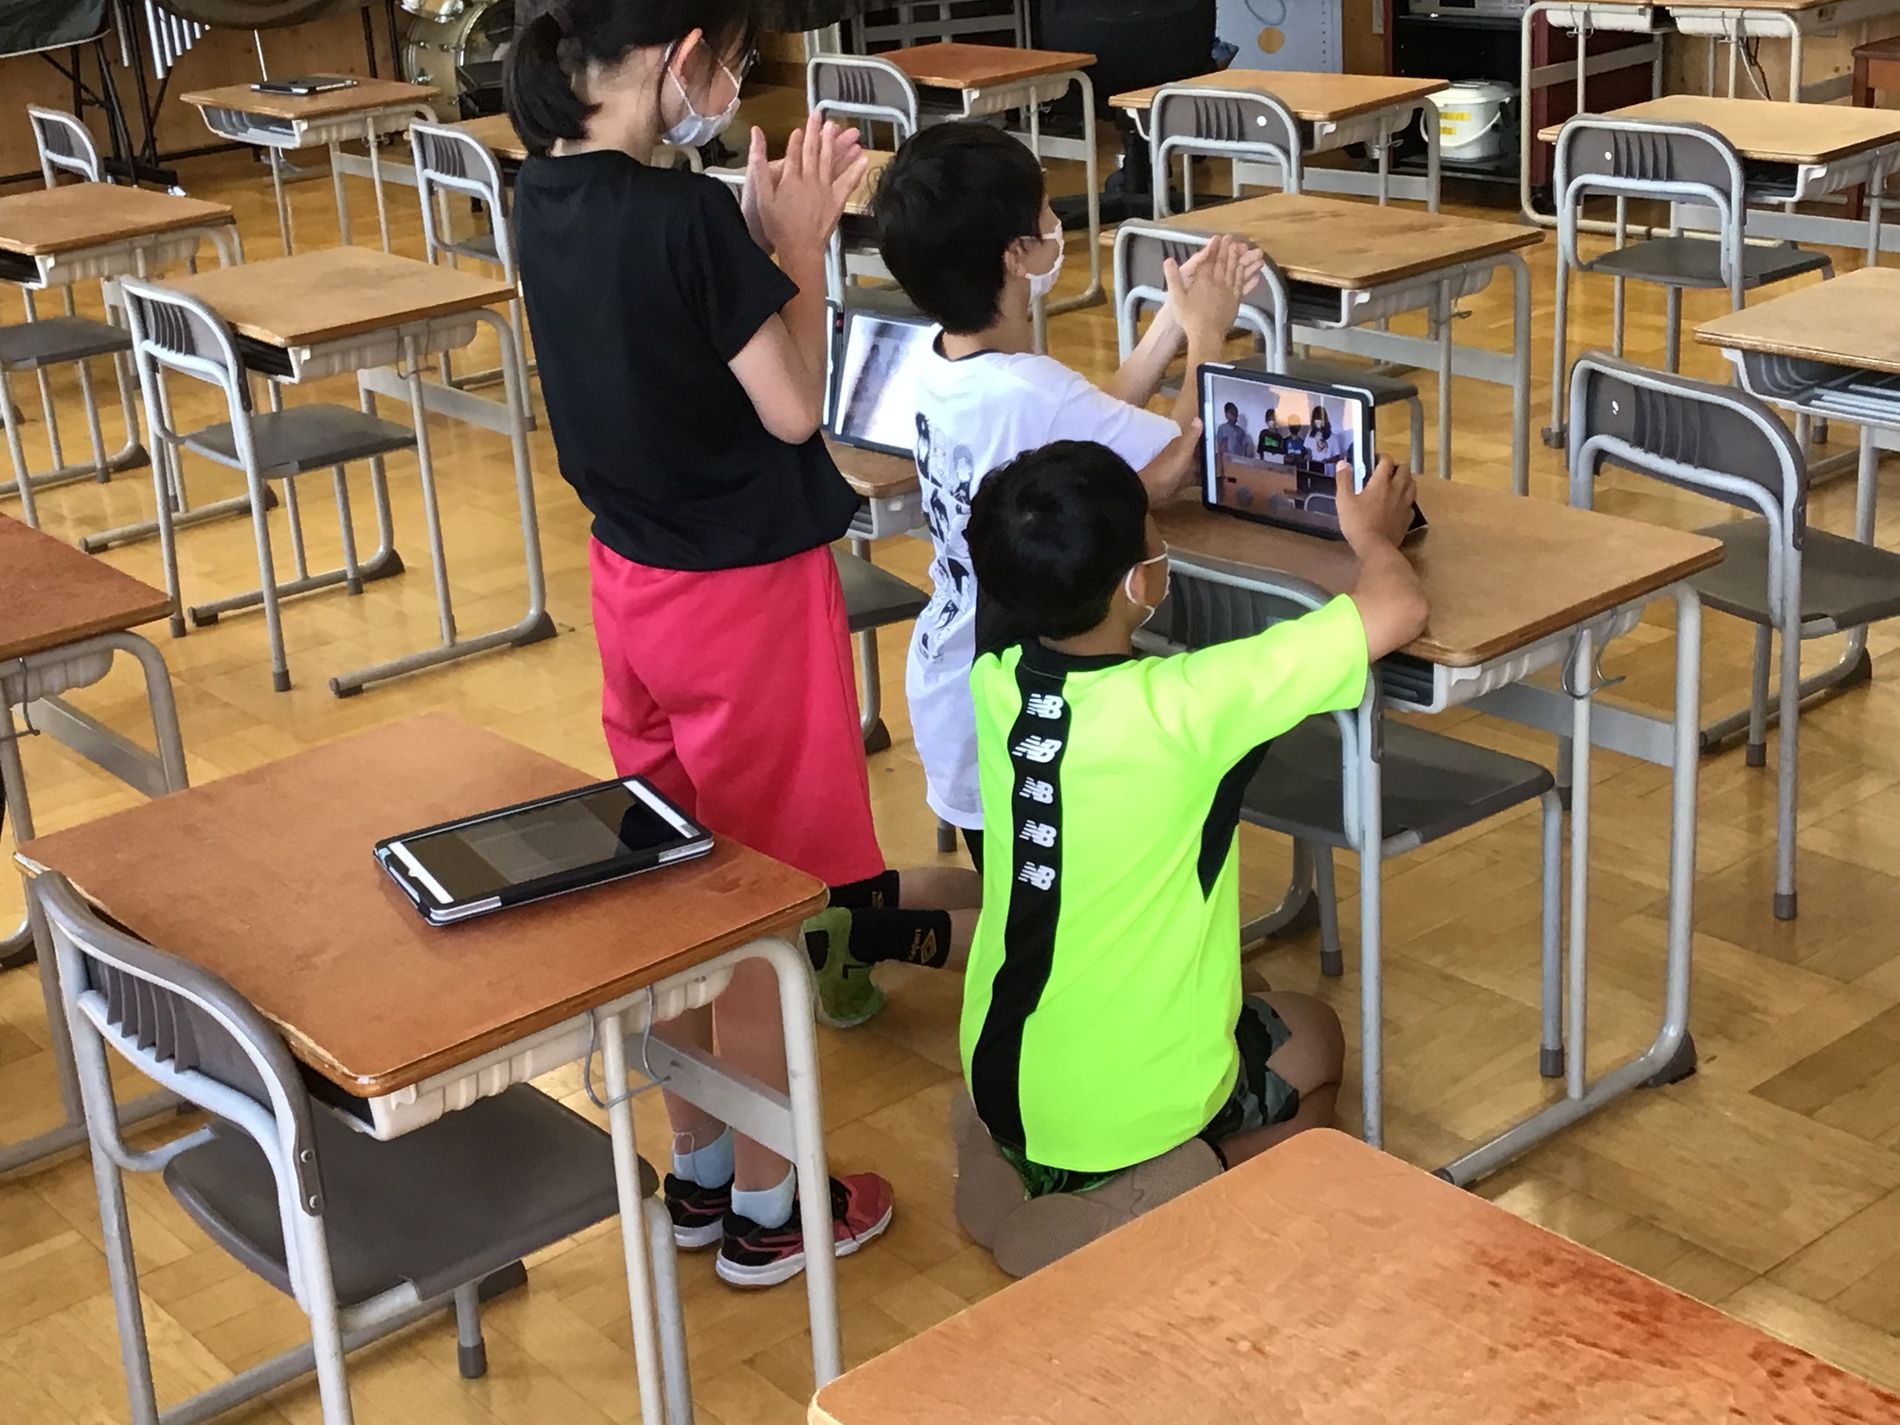 教室の机の前でタブレット端末を見たり、手を叩いている3人の子供の写真